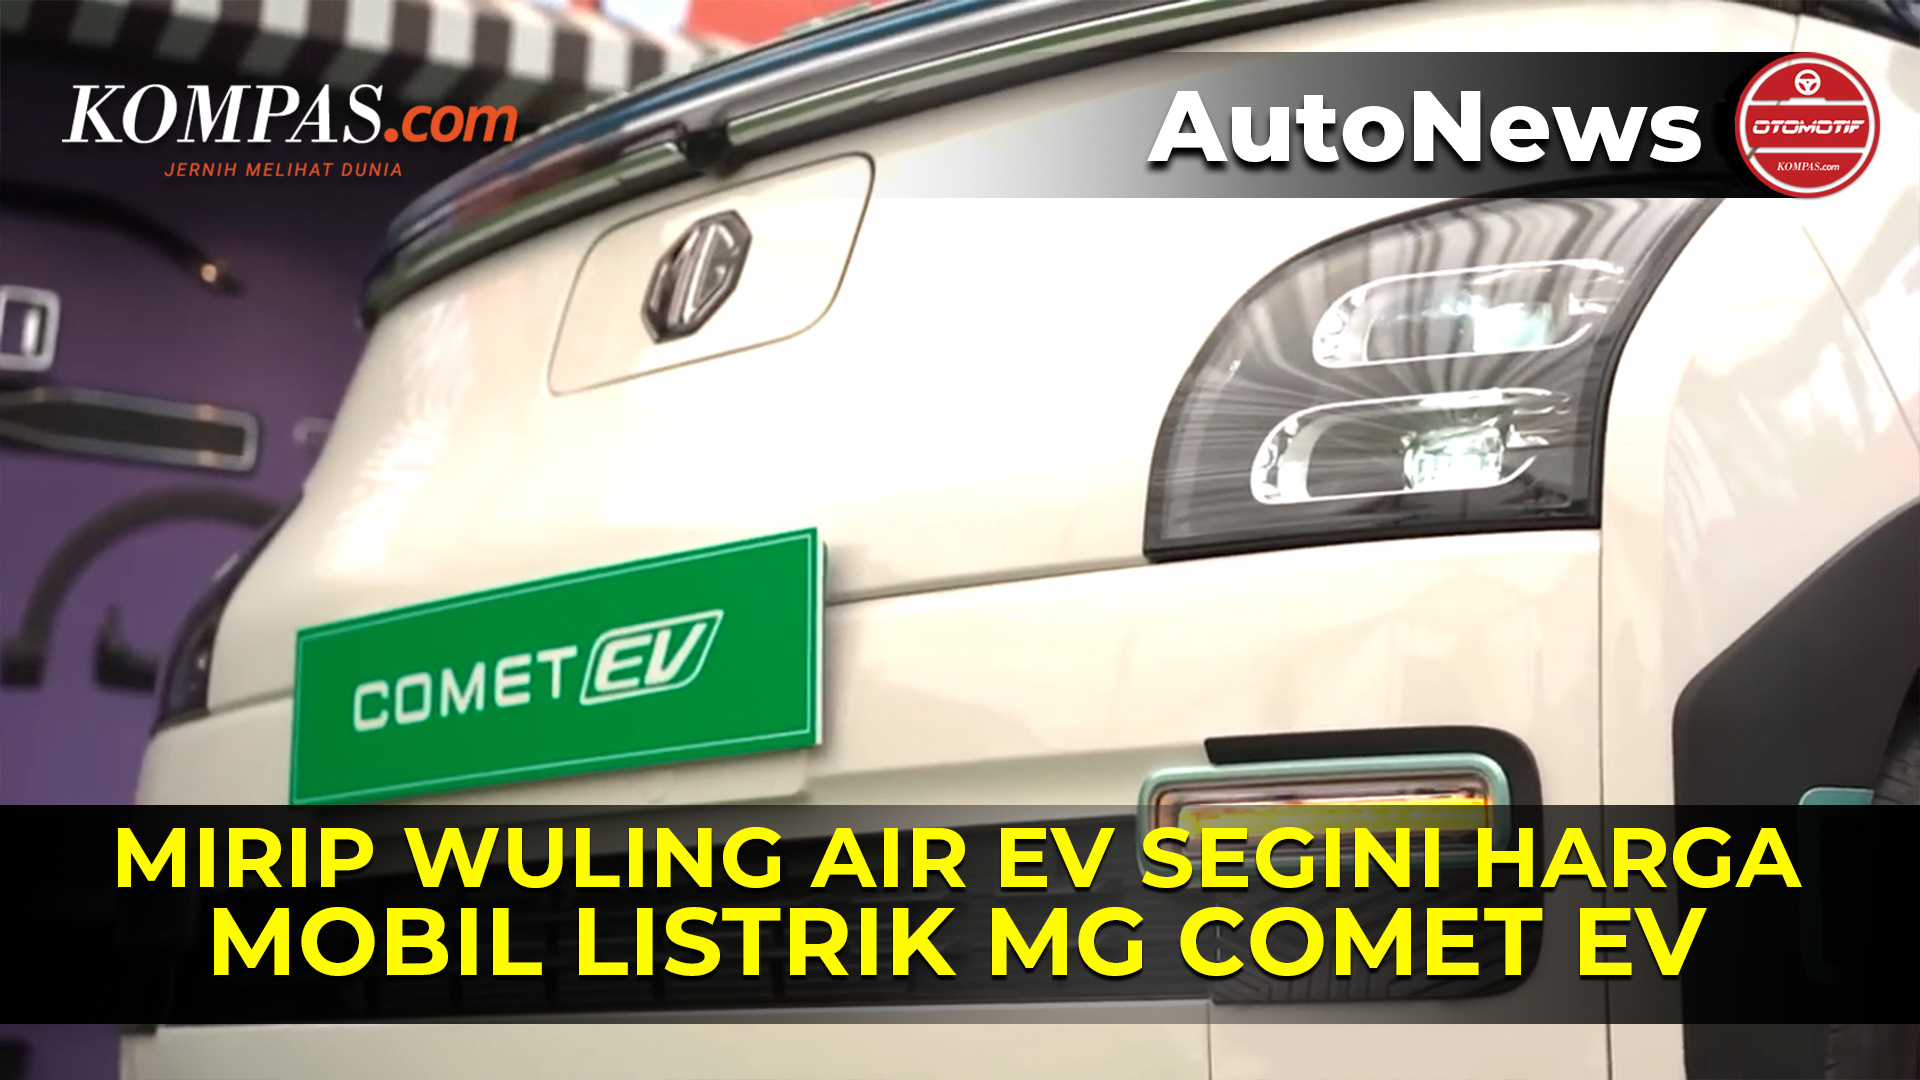 Mobil Listrik MG Comet EV Meluncur, Kembar Identik Wuling Air ev